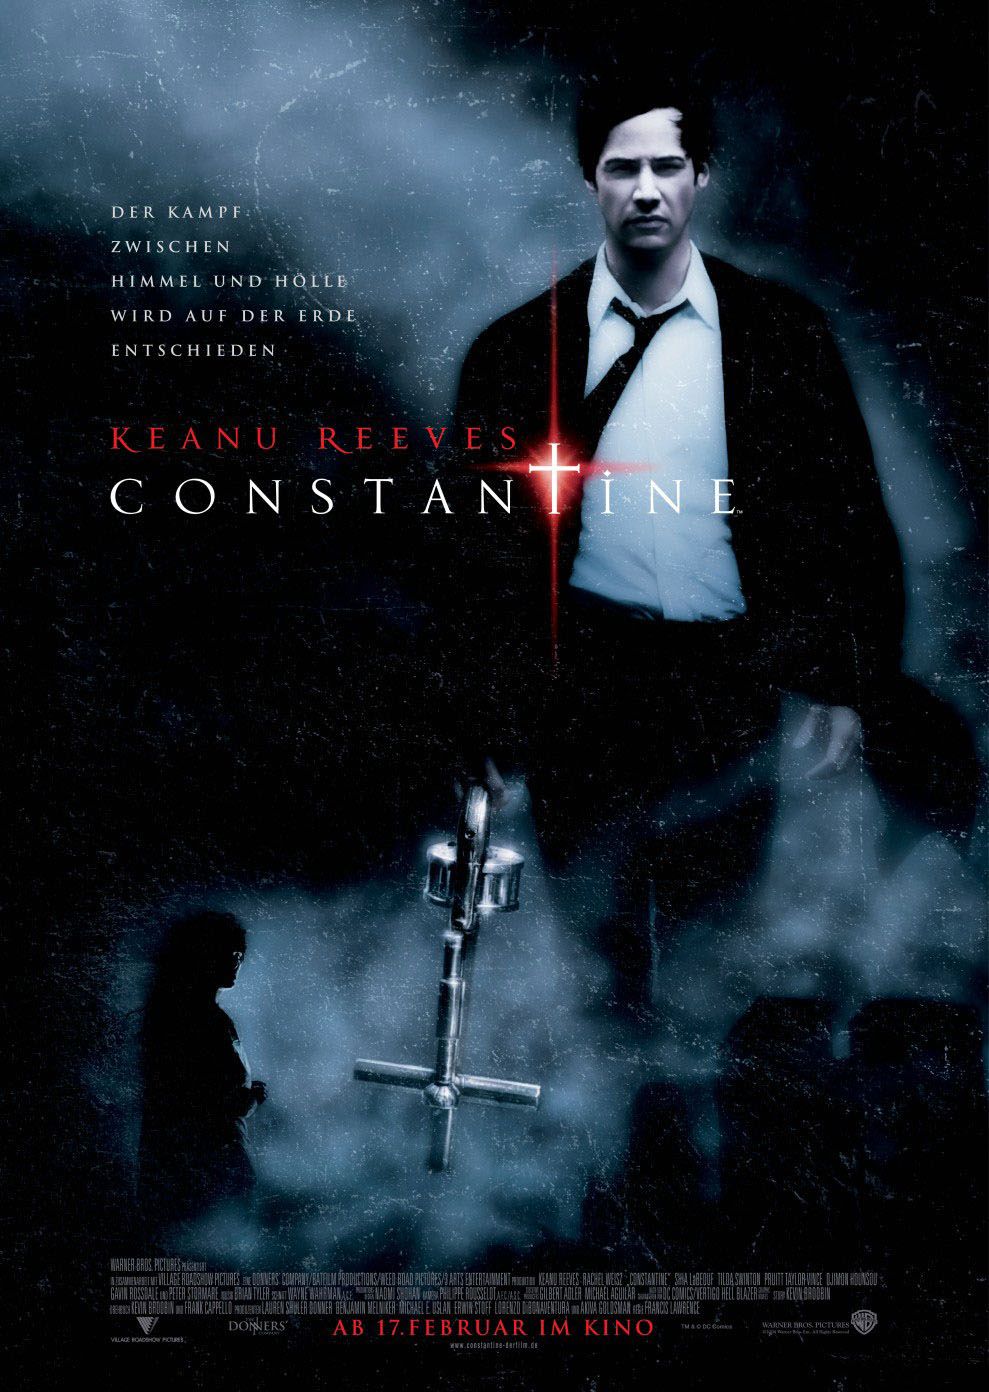 FULL MOVIE: Constantine (2005) [Horror]